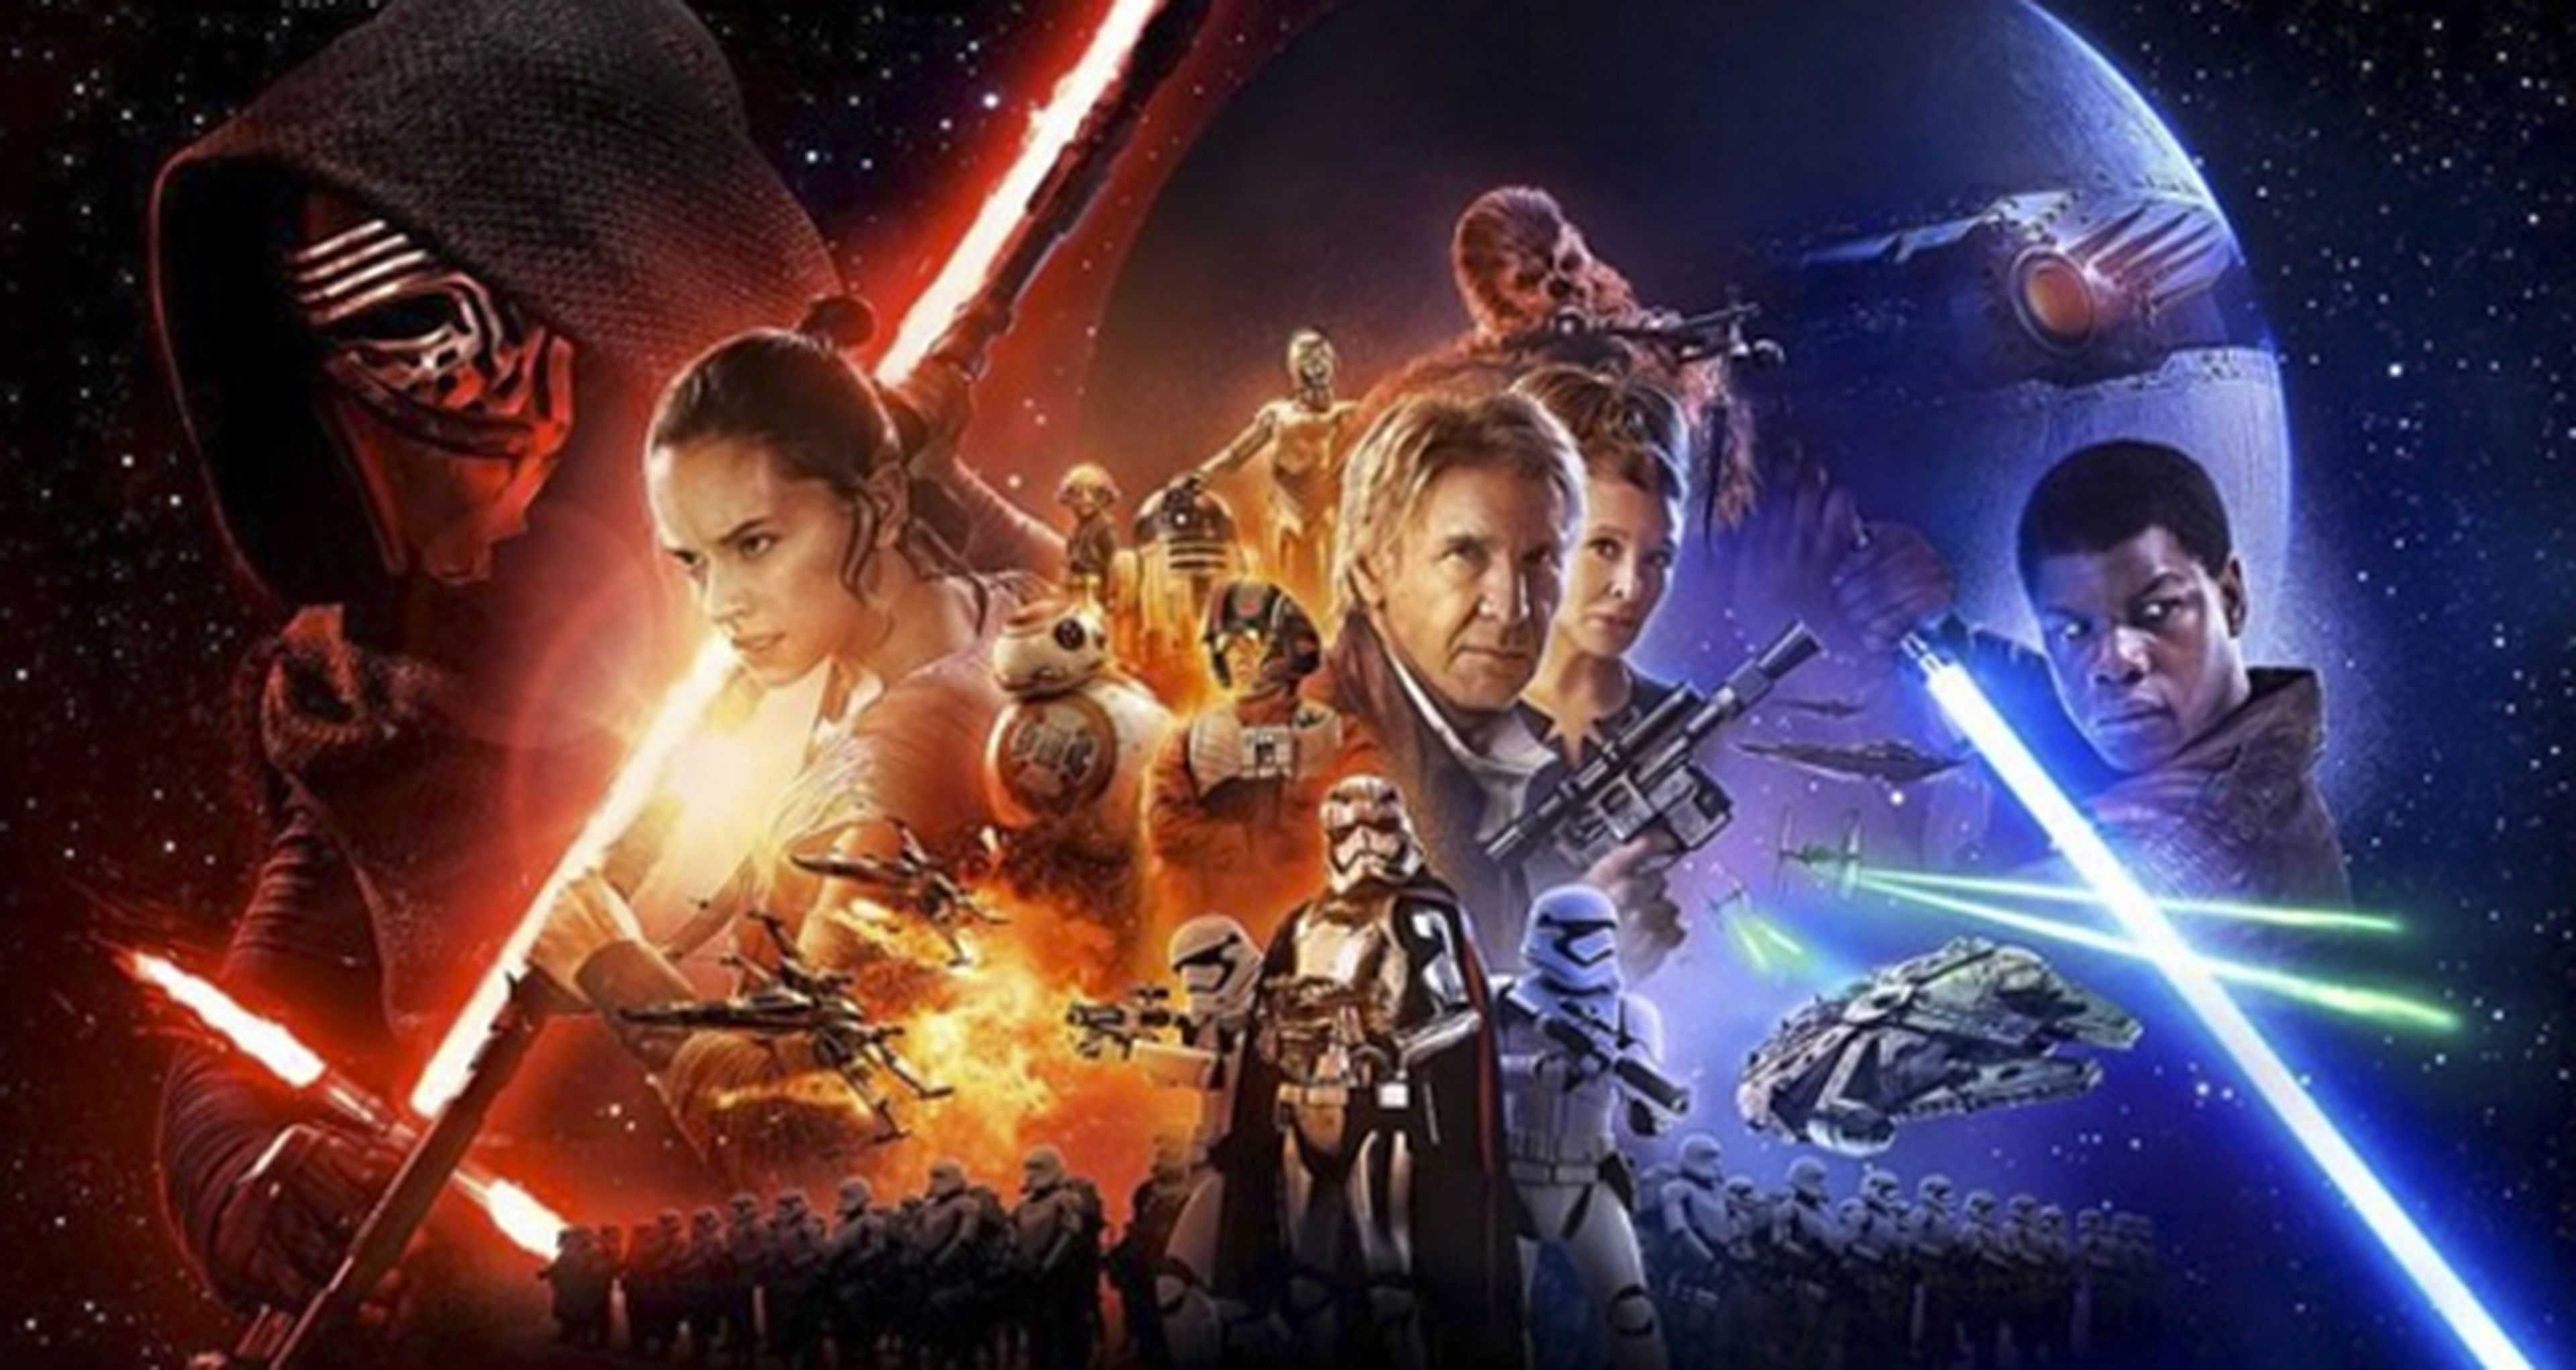 Star Wars Episodio VII: el despertar de la Fuerza, ¡doble crítica!